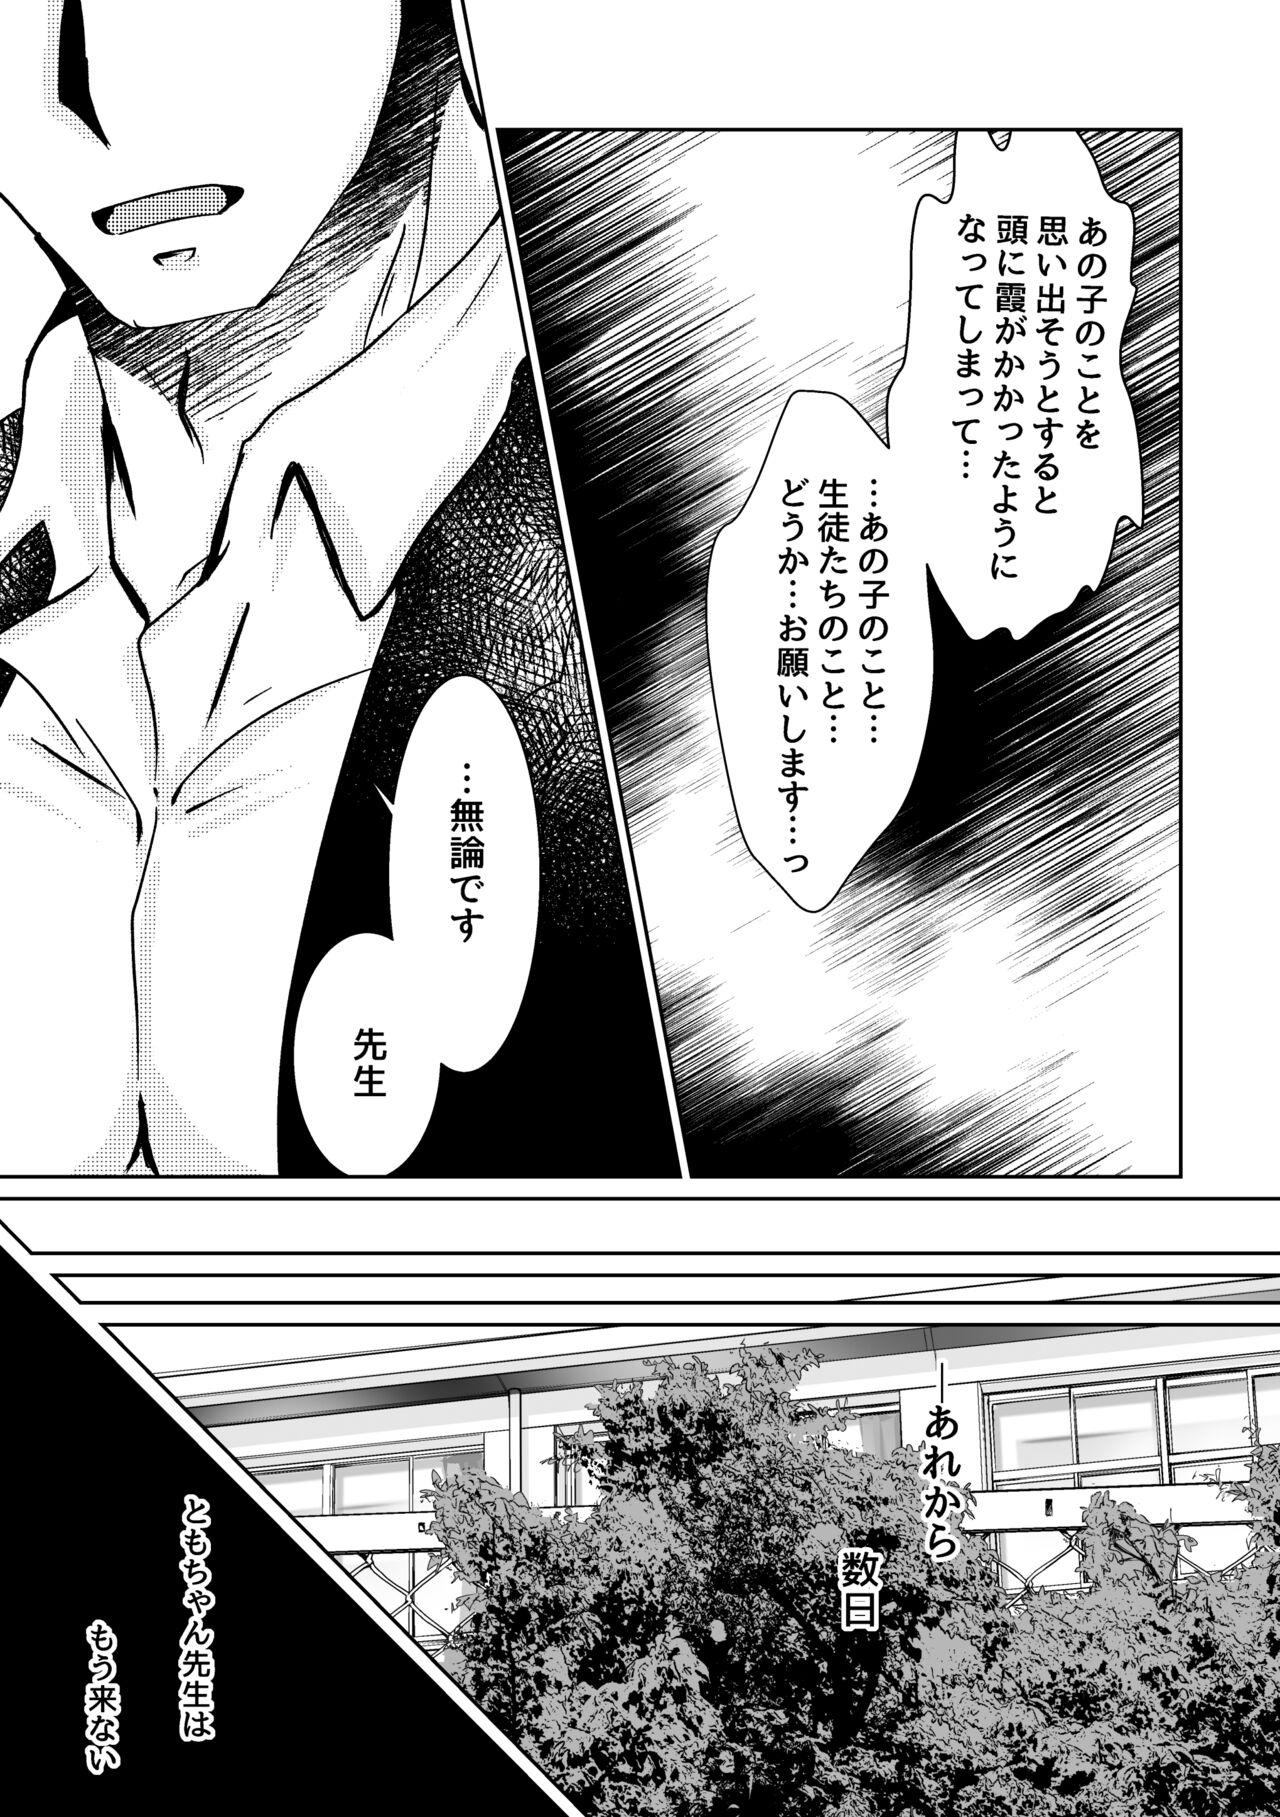 Blackwoman Kareya Yoru no Hanaka Episode 3 Reality - Page 3